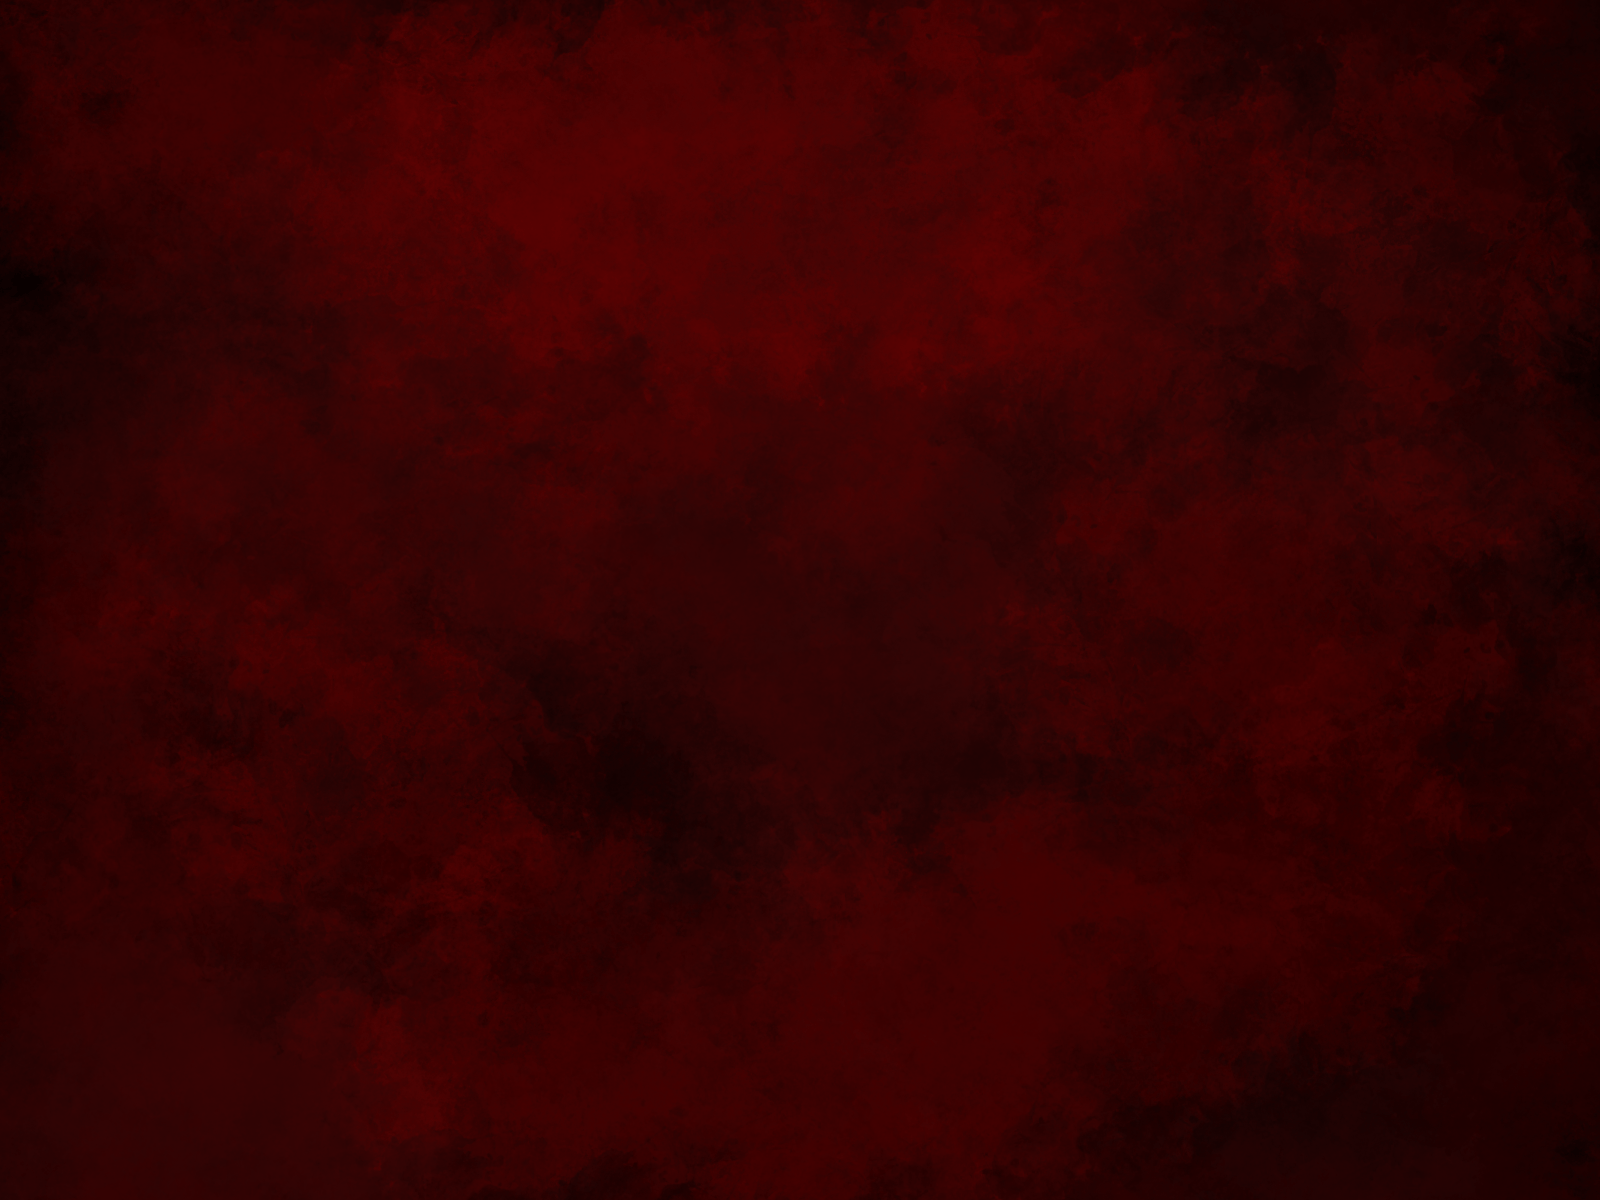 crimson background. Dark red background, Red background, Textured background